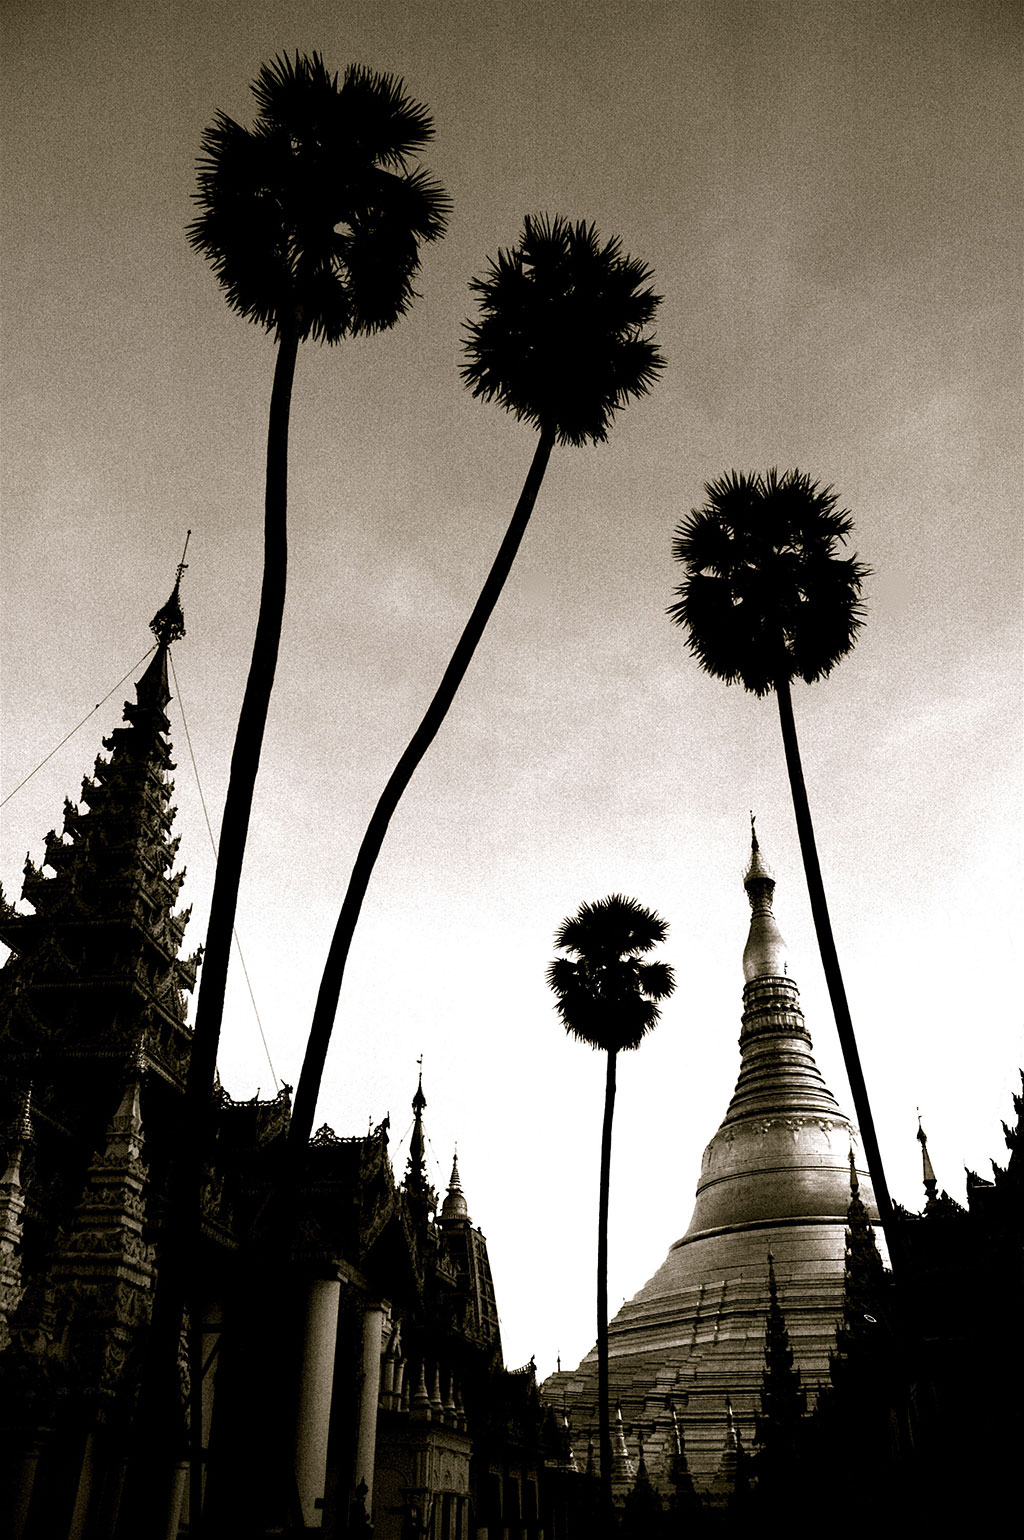 Shwedagon (Golden) Pagoda in Yangon, Burma